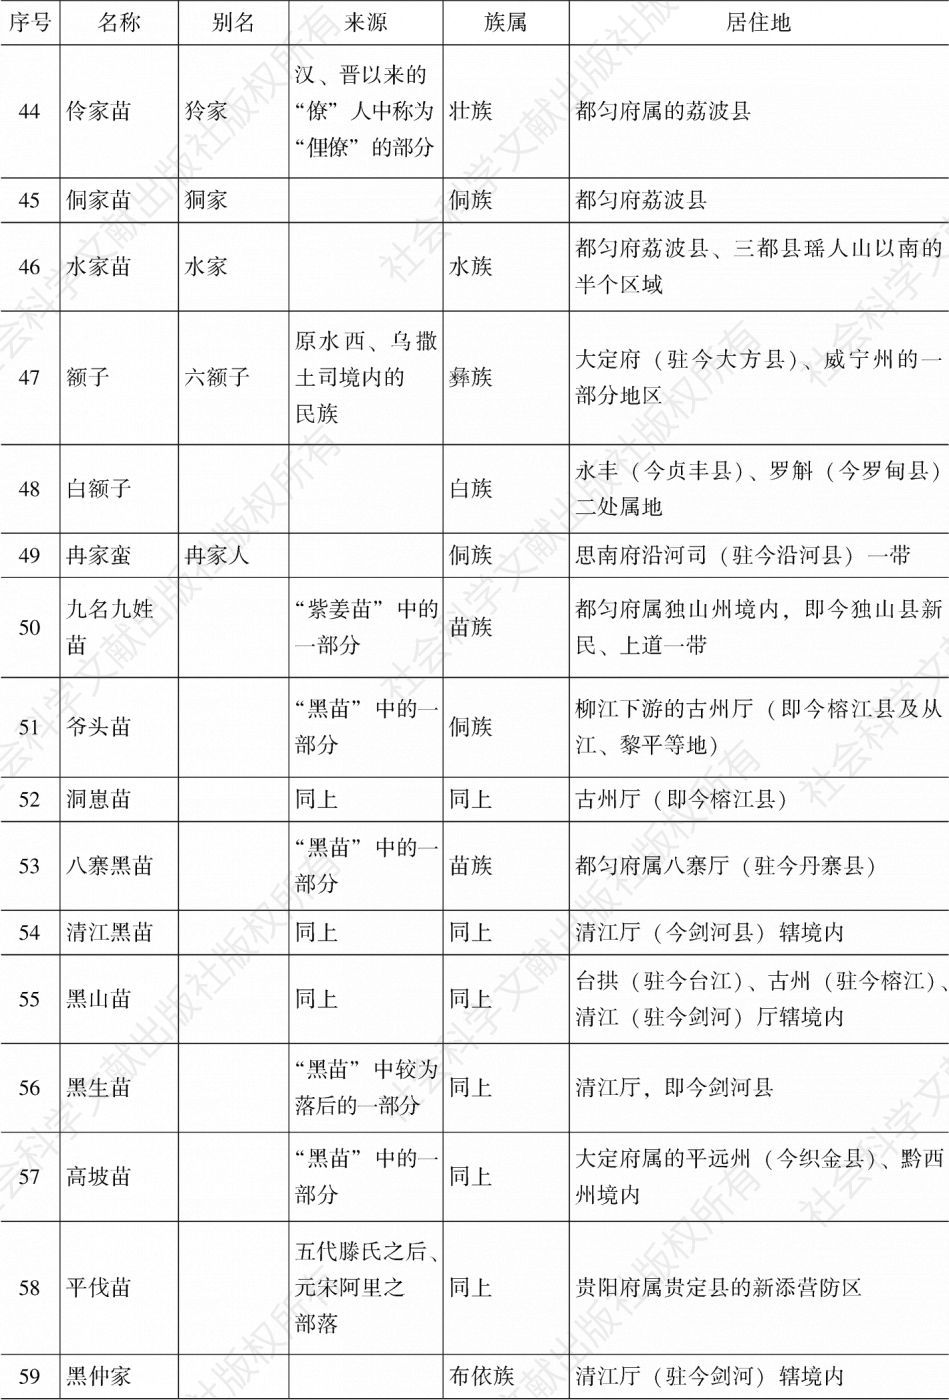 表3-1 《金筑百苗图》记载的贵州“百苗”种类表-续表3